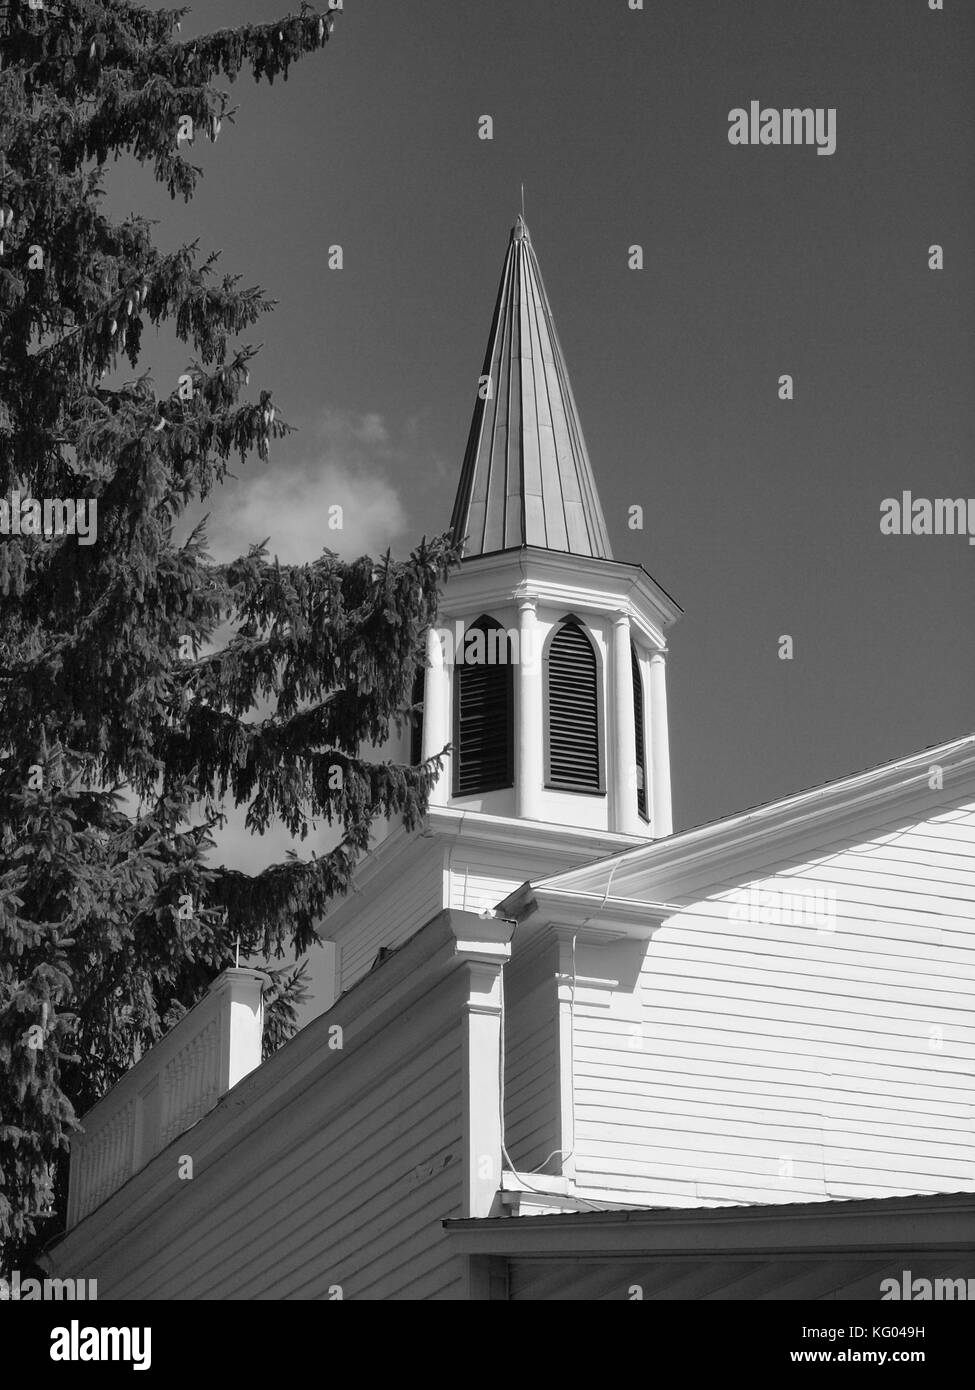 L'ancienne église se vole en noir et blanc montrant les détails architecturaux. Banque D'Images